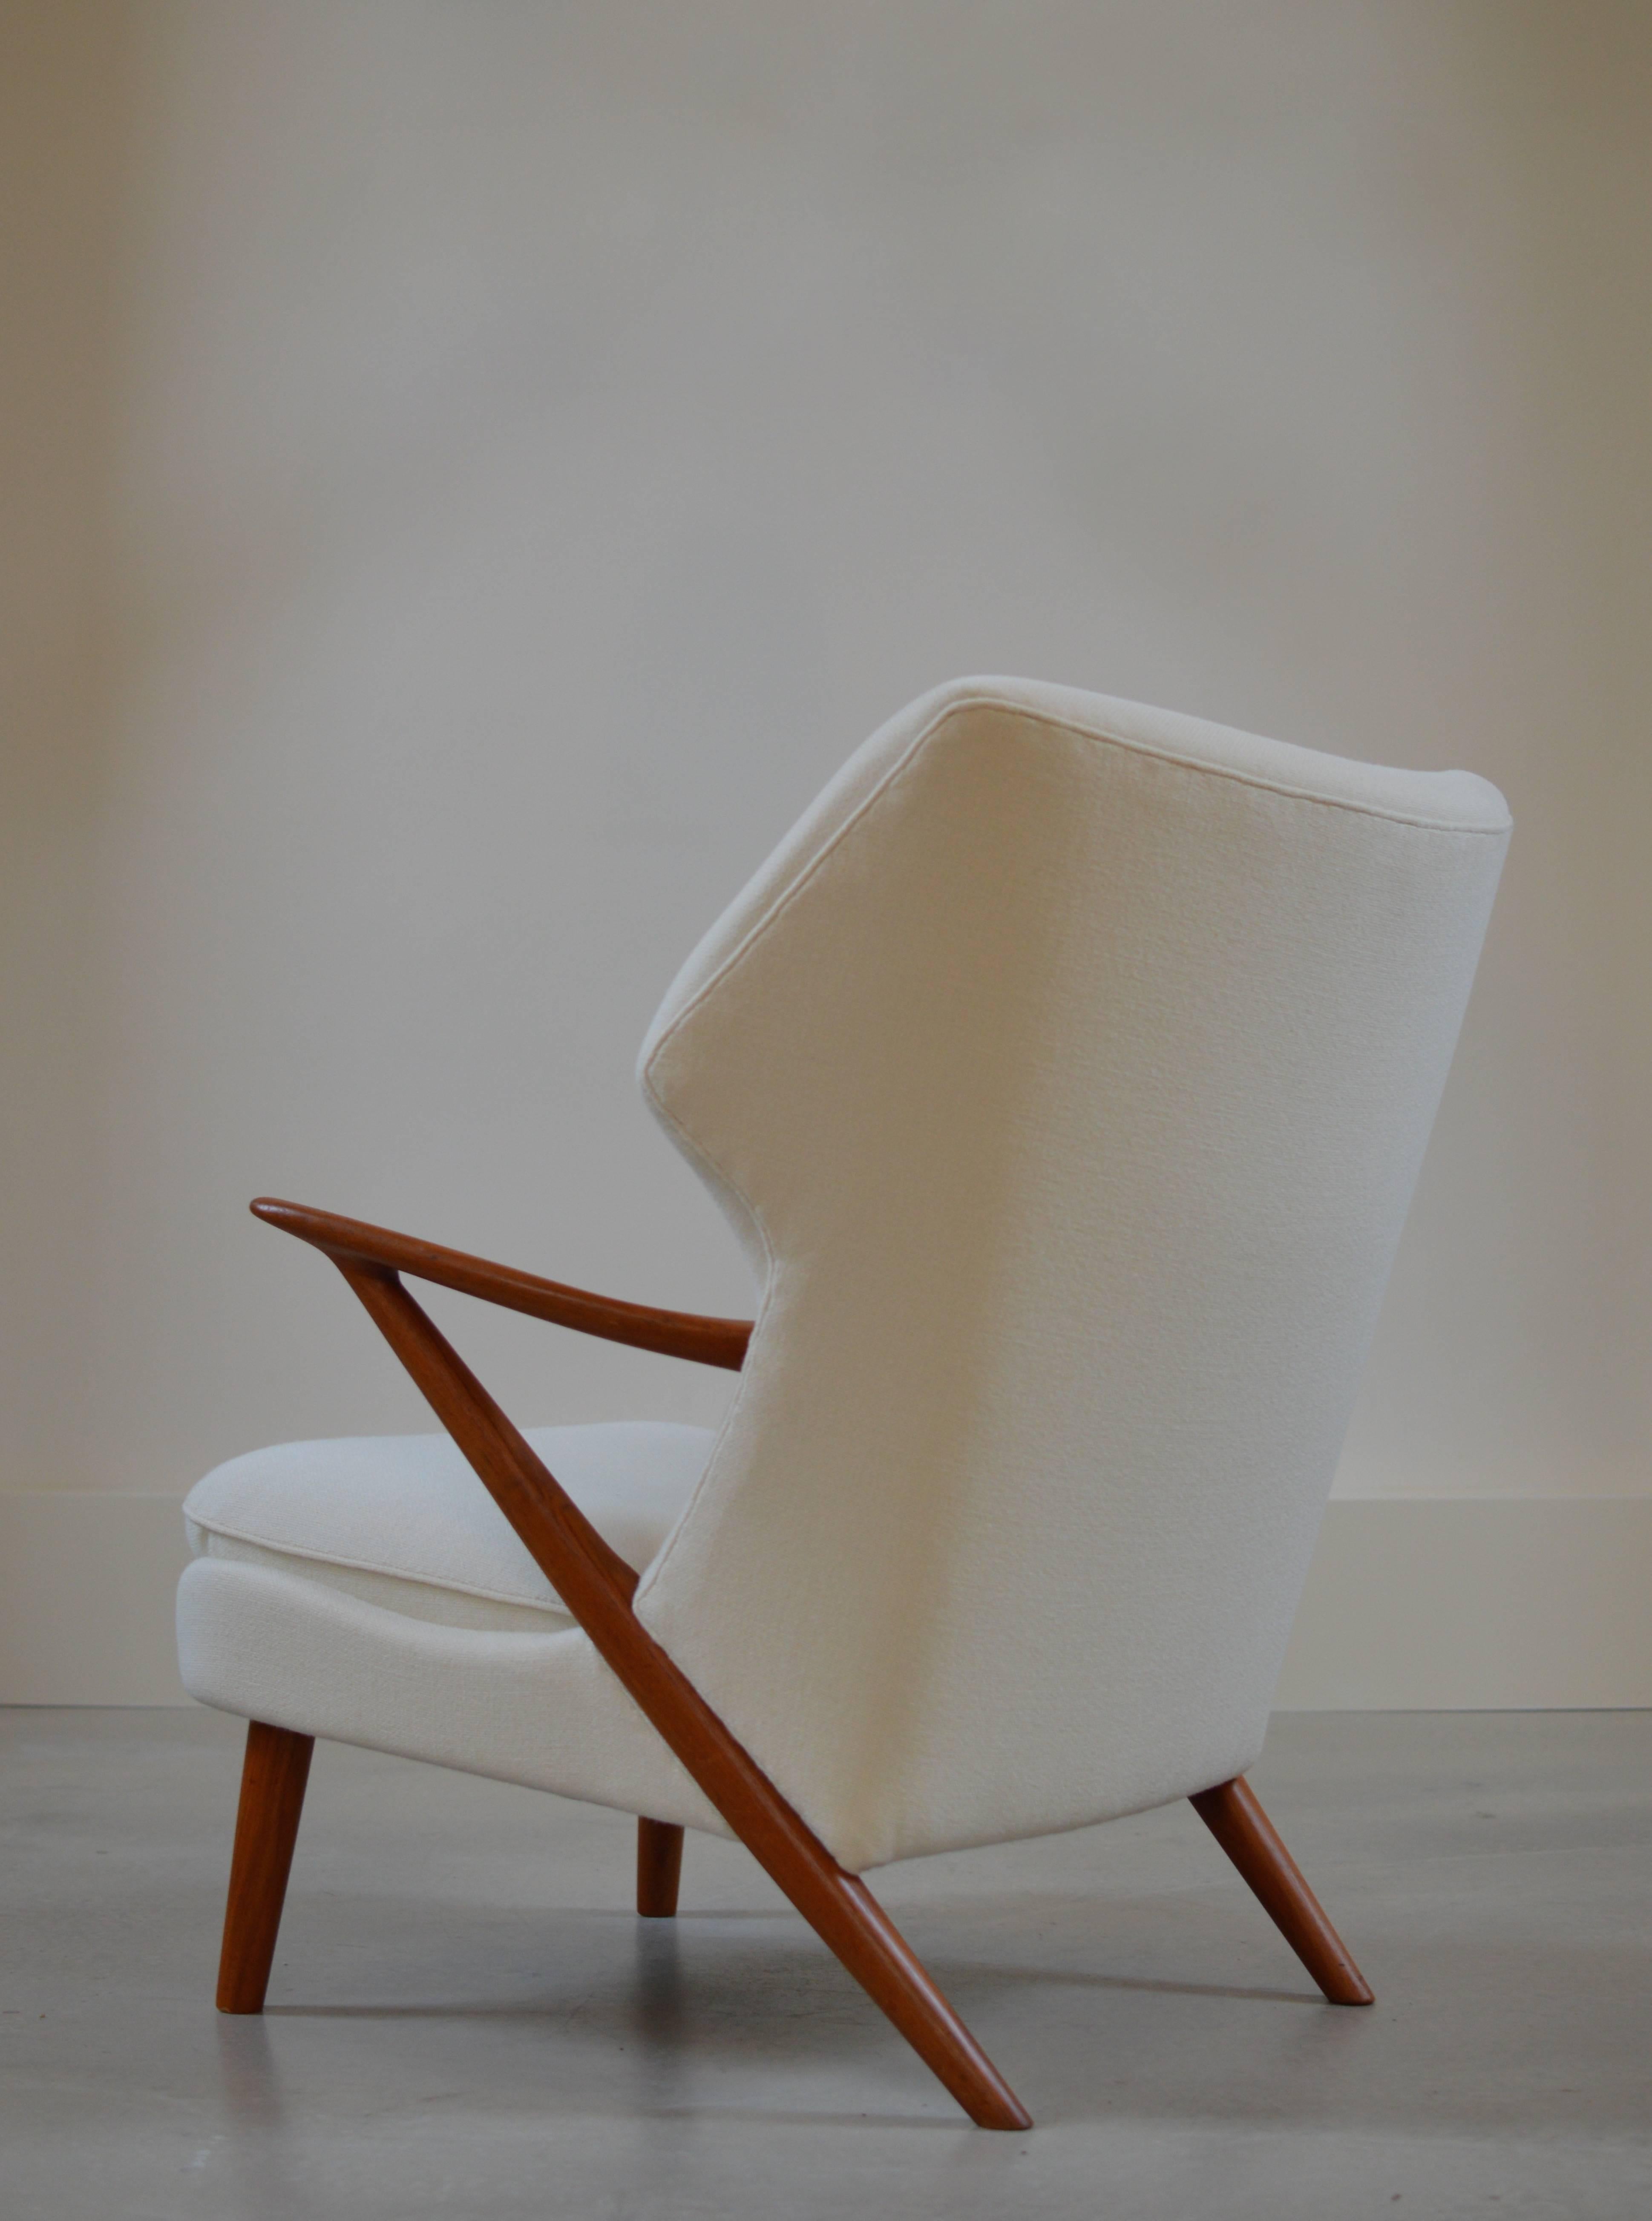 Scandinavian Modern Lounge Chair by Kurt Olsen from 1955